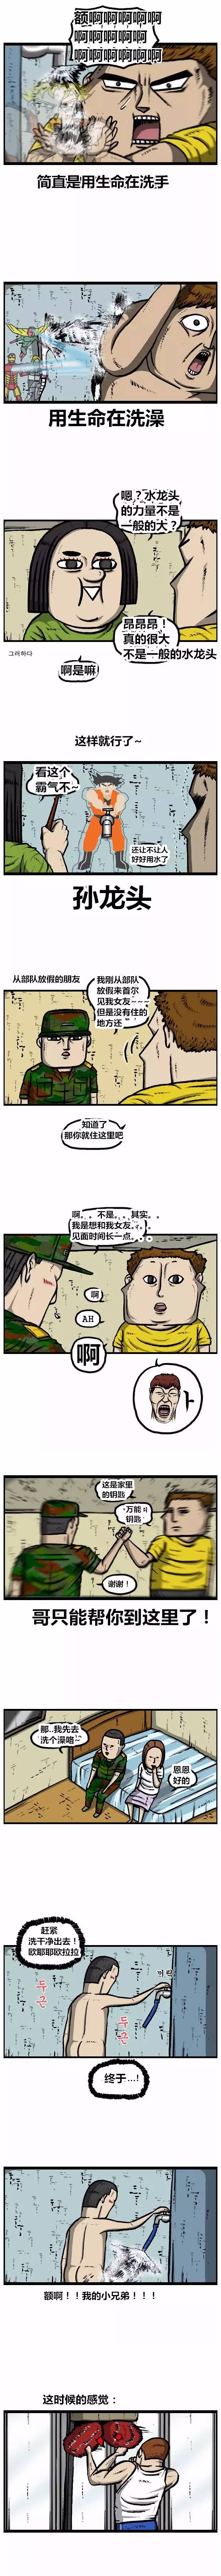 搞笑漫畫《趙俊給趙石介紹了個新住處》 汽車 第3張